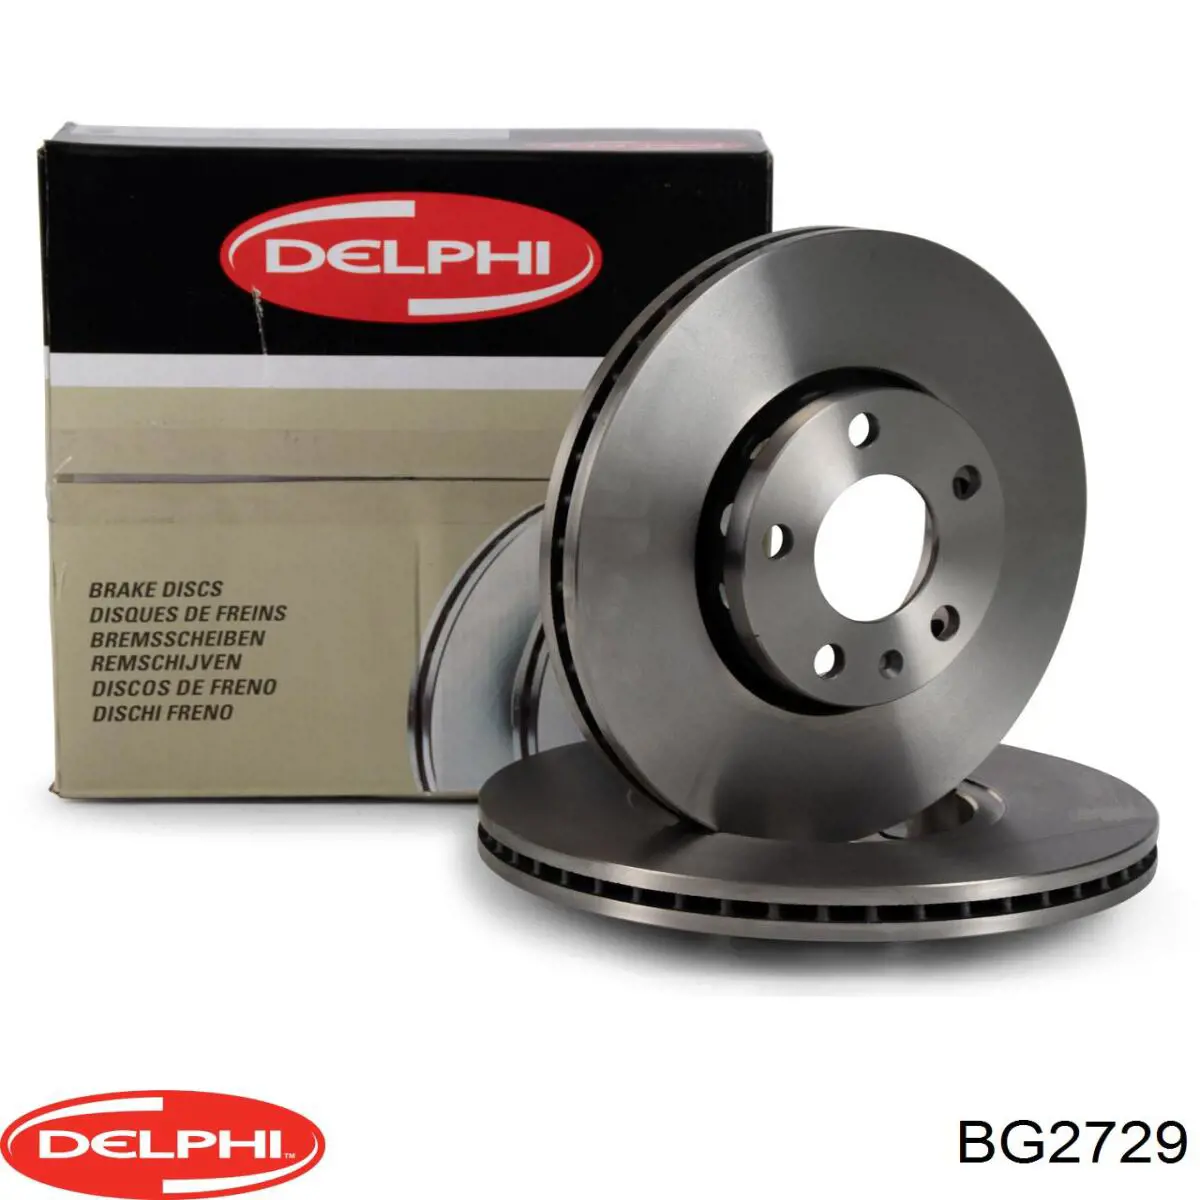 BG2729 Delphi disco do freio dianteiro